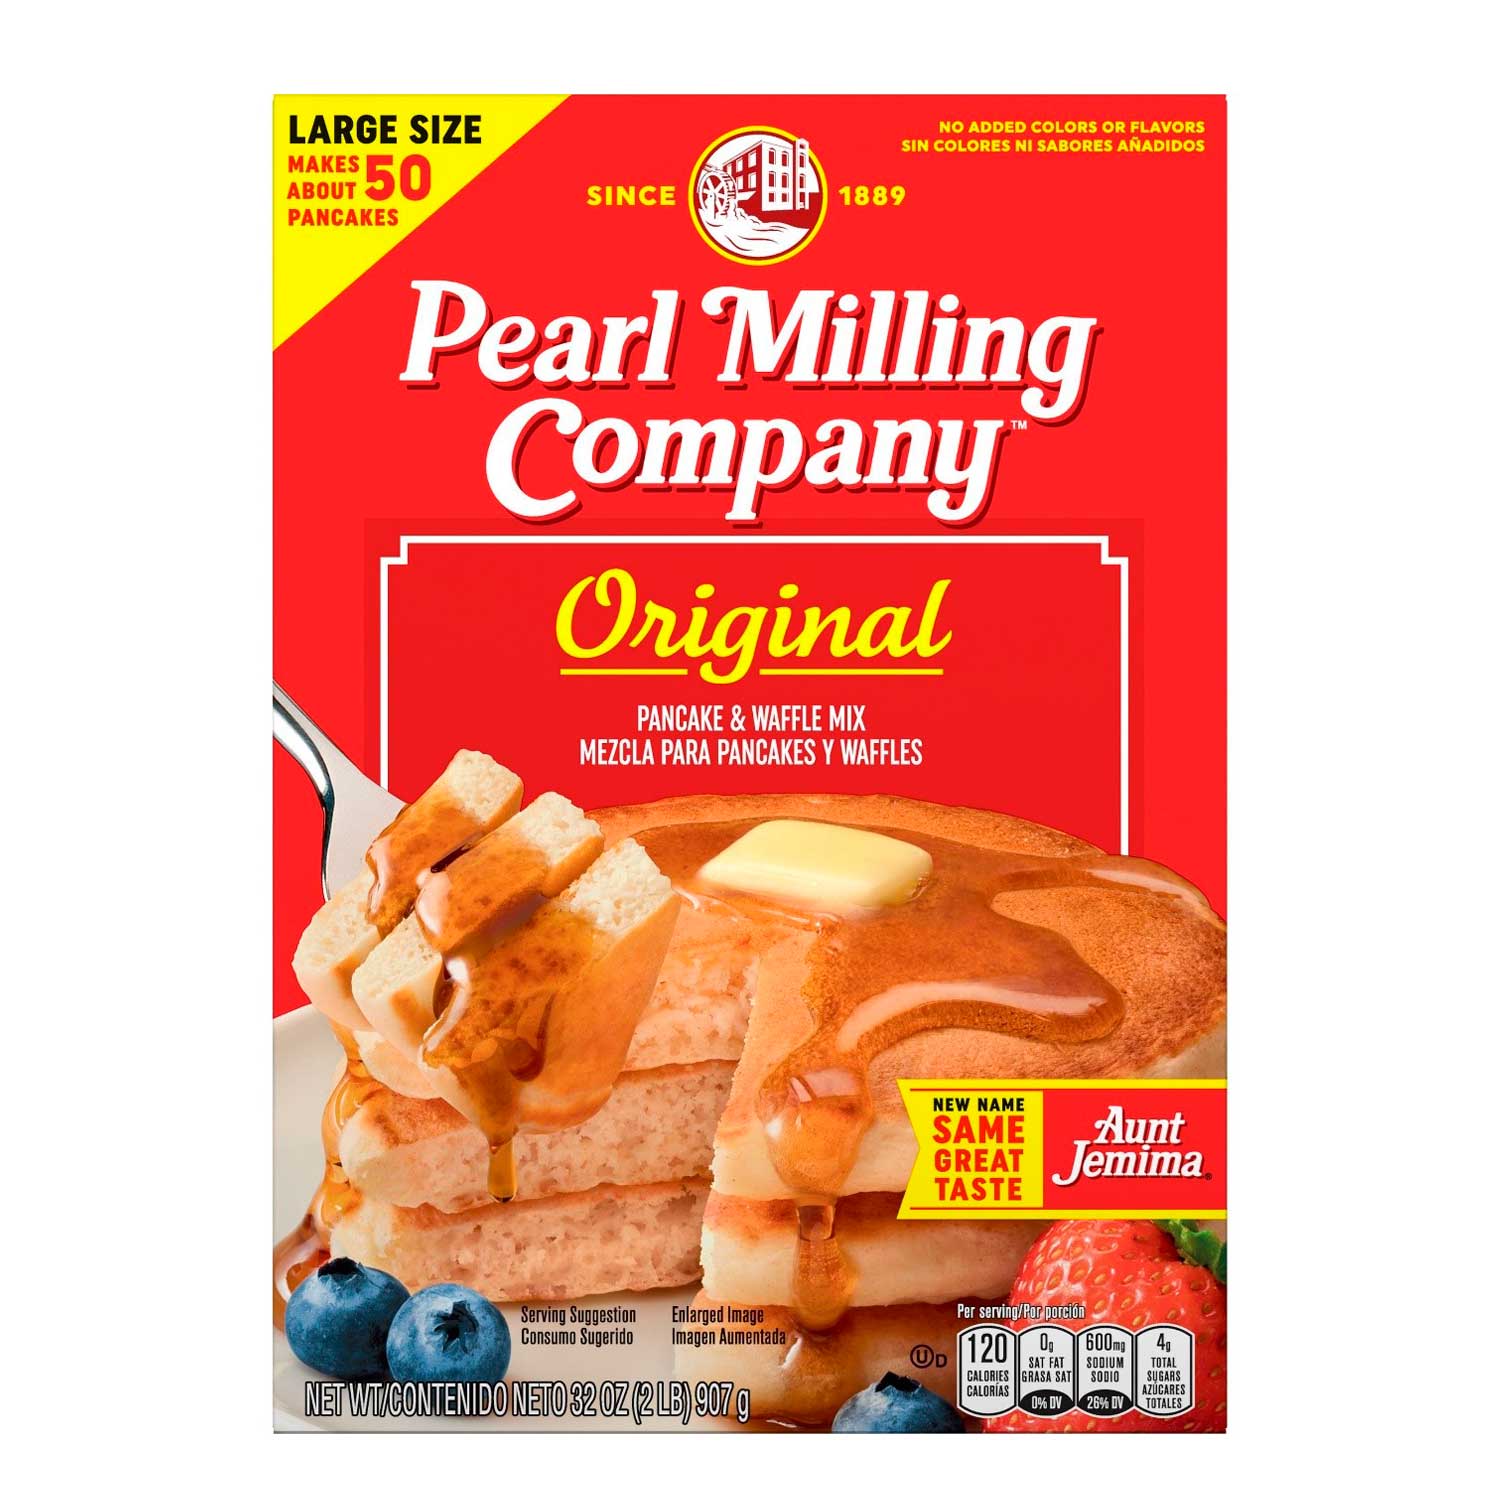 Mezcla de Panquecas y Waffles Pearl Milling Company. 907 gr